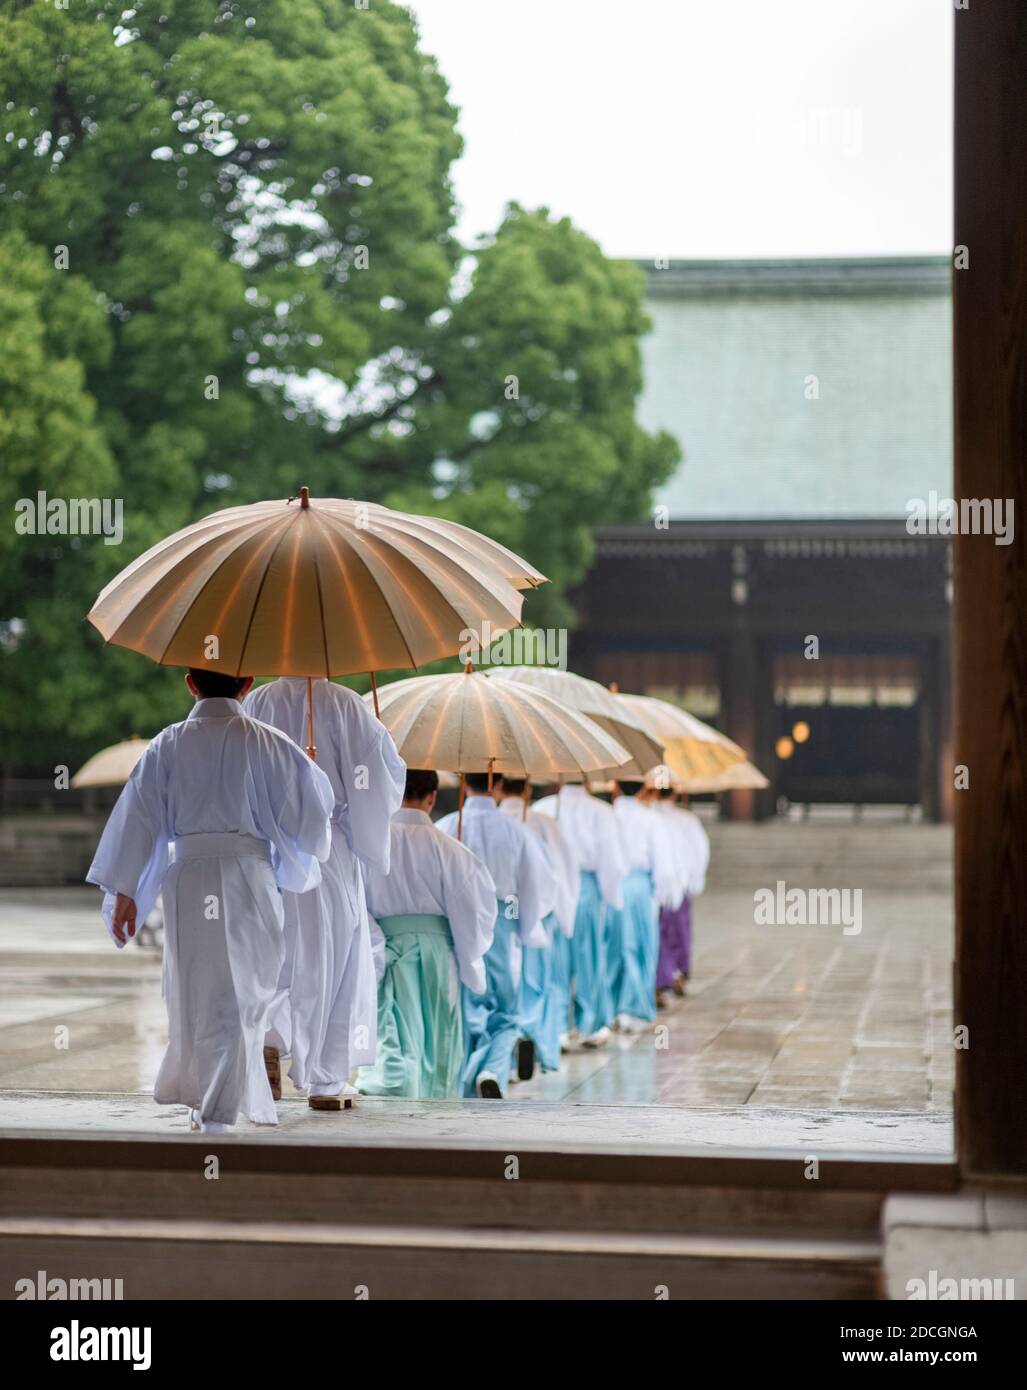 Kigansai ceremonia privada, Santuario Meiji, Shibuya, Tokio, Japón. Foto de stock